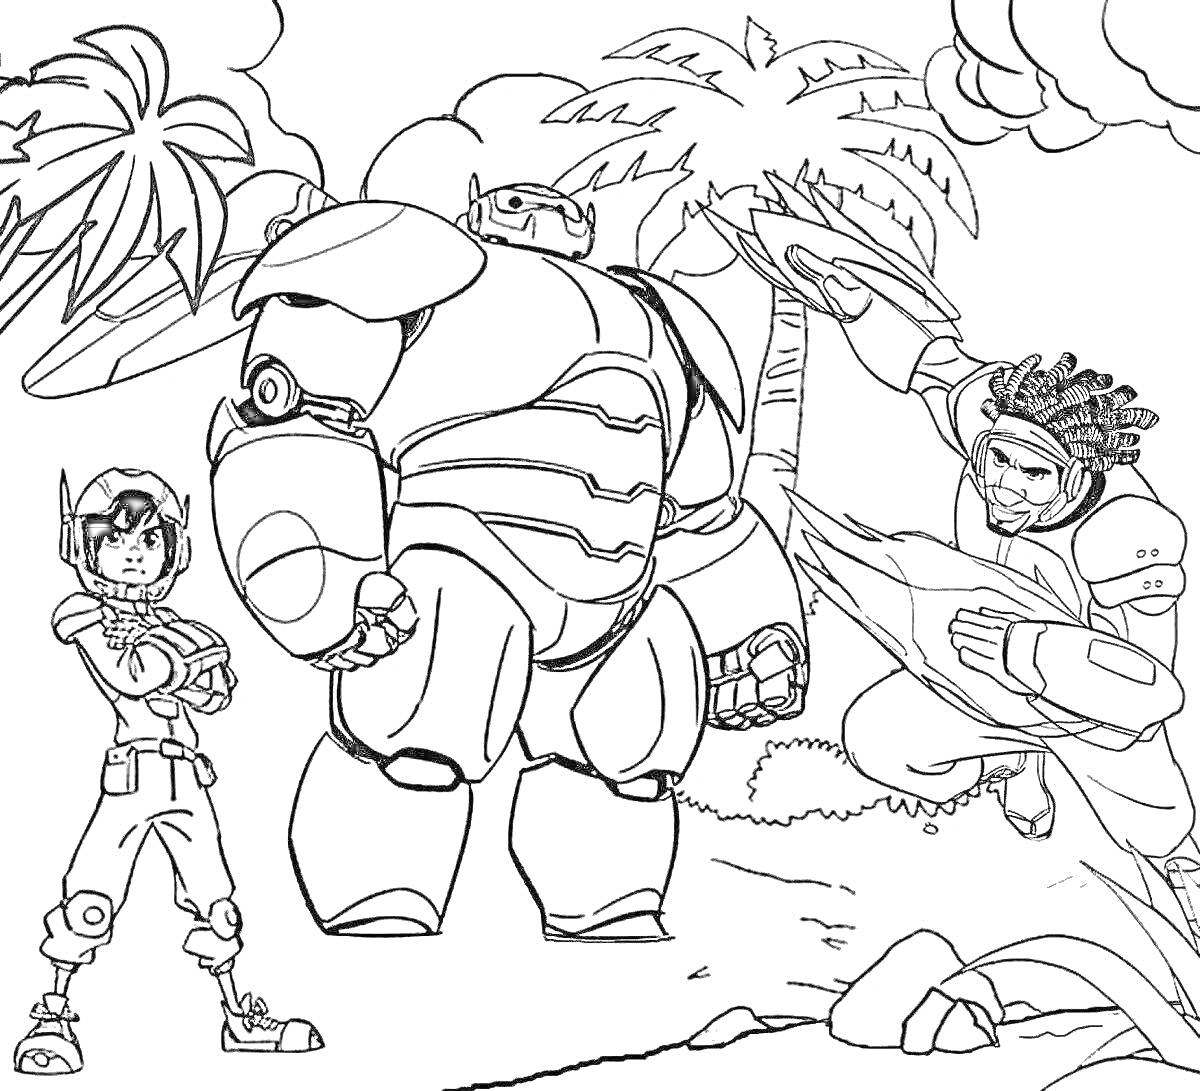 Раскраска Раскраска с тремя персонажами в фантастических костюмах возле пальм